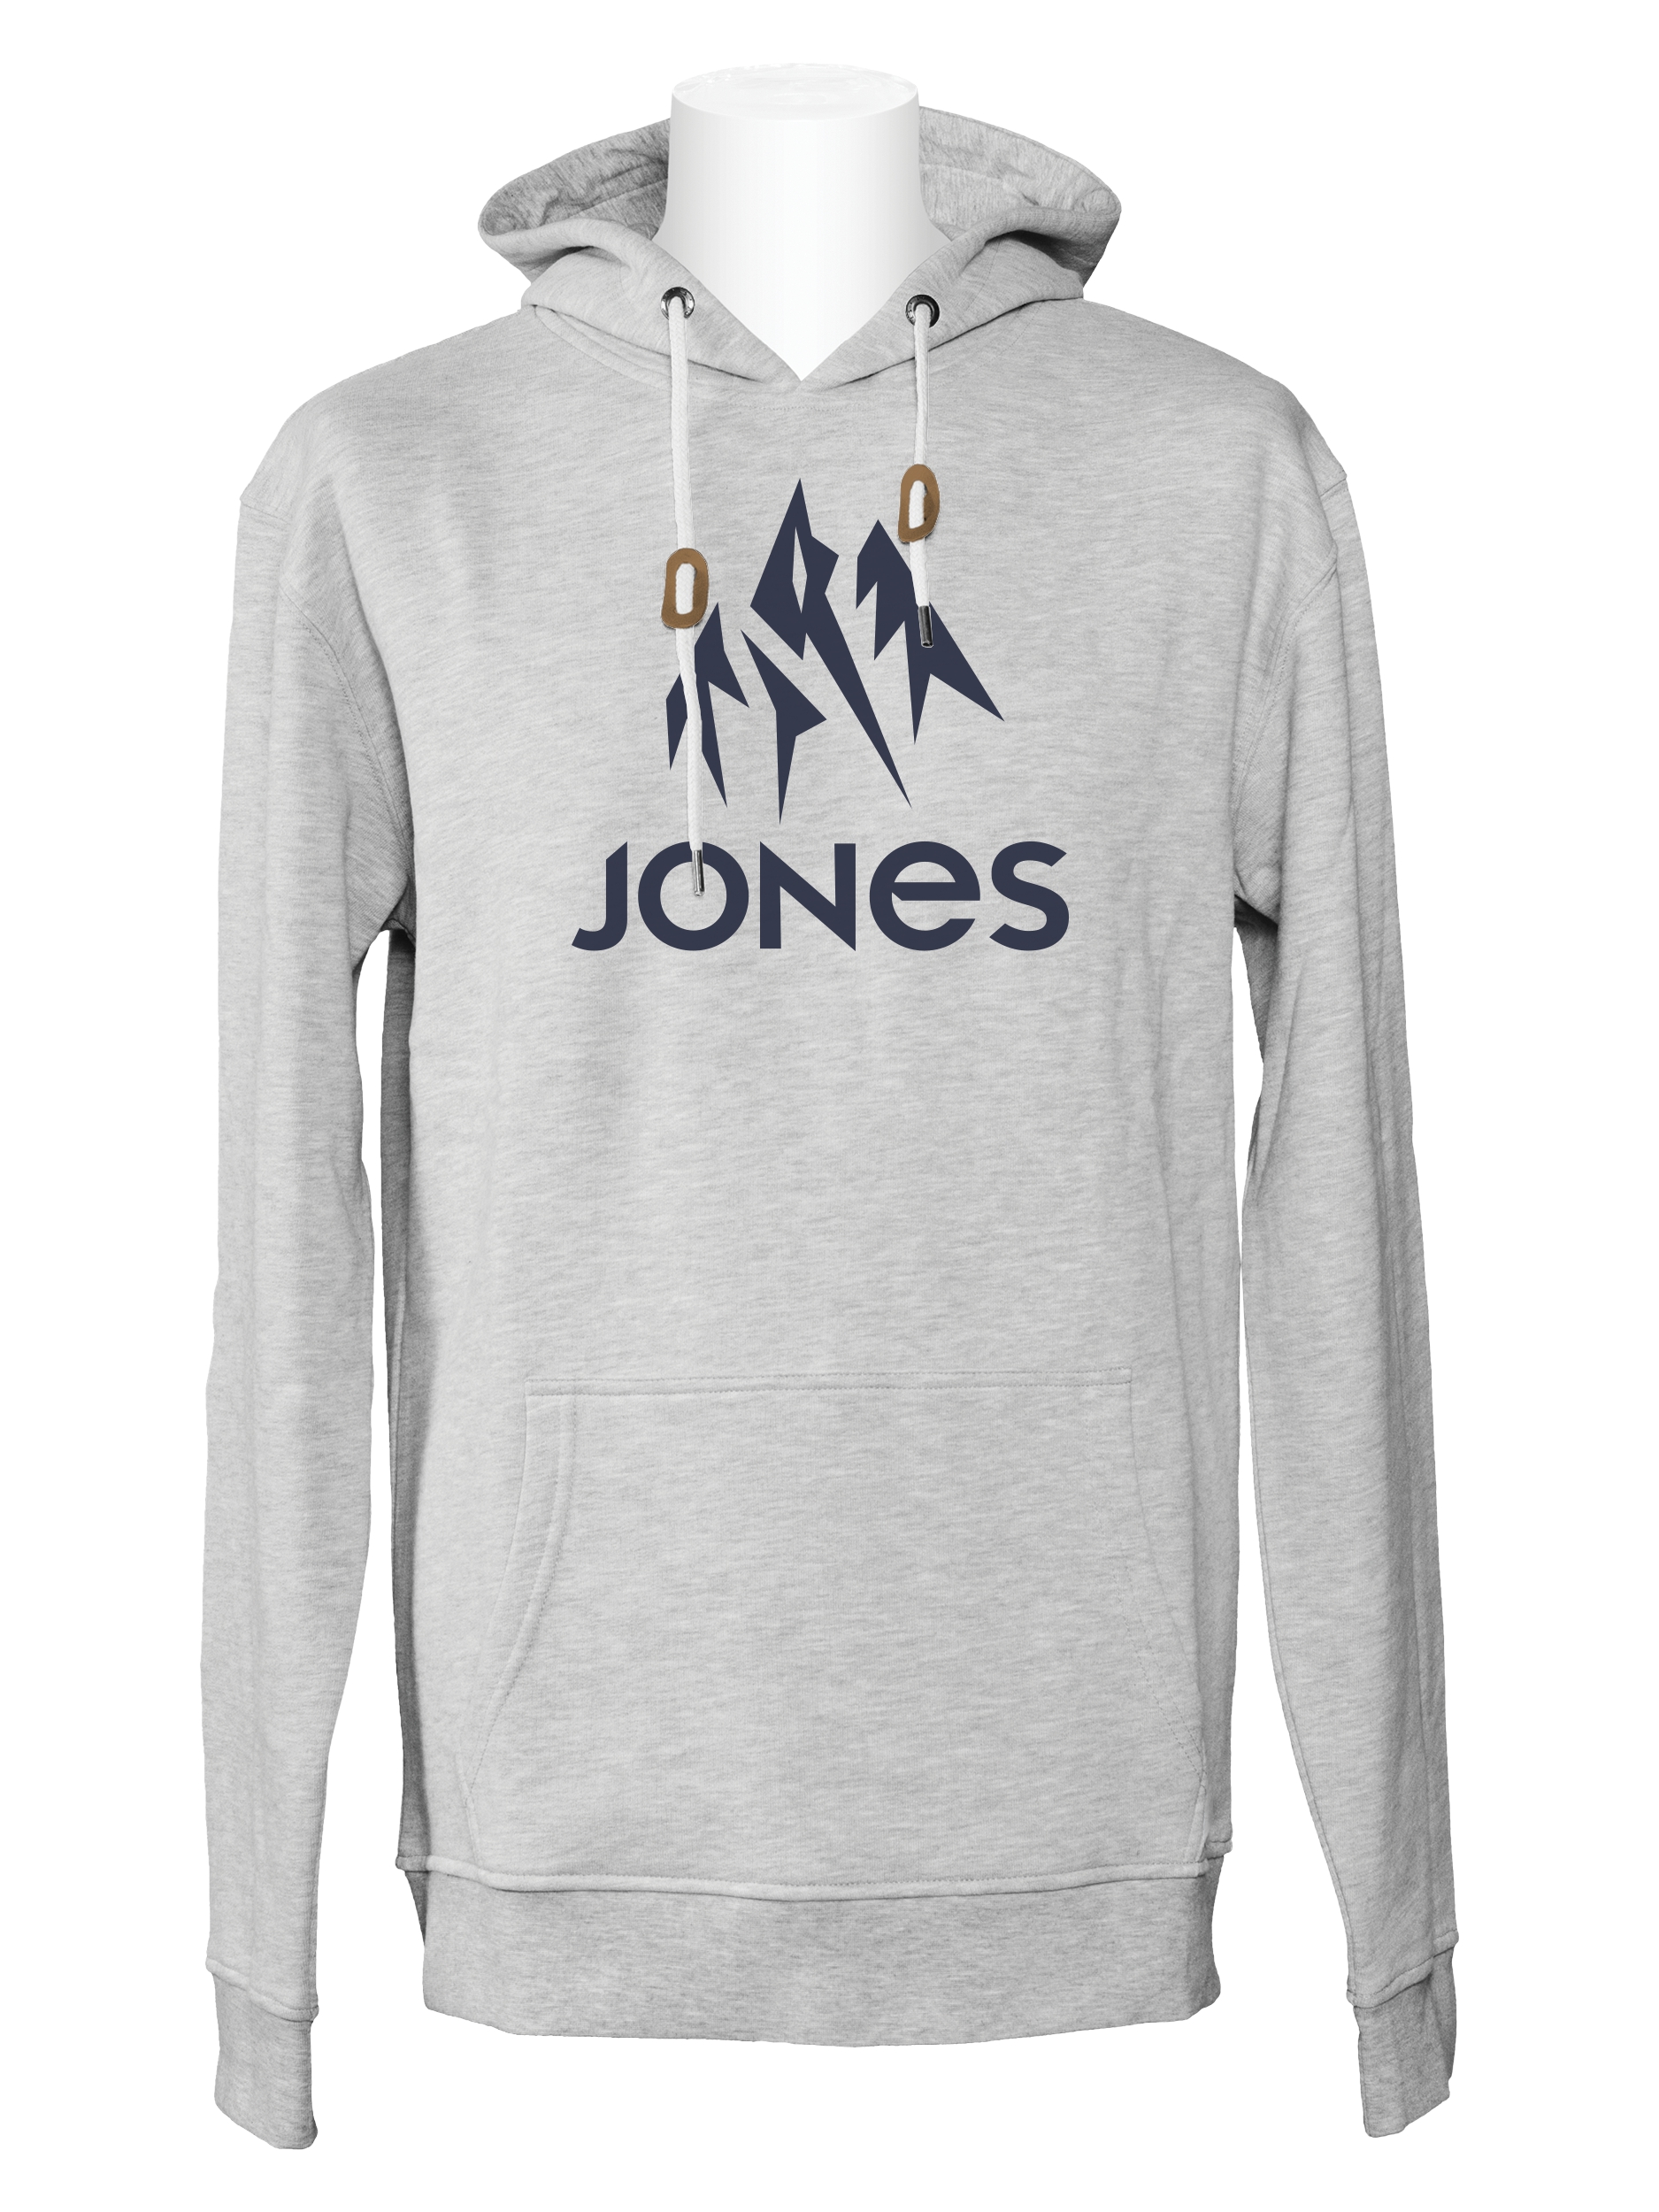 3. Jones Truckee Hoody Grey